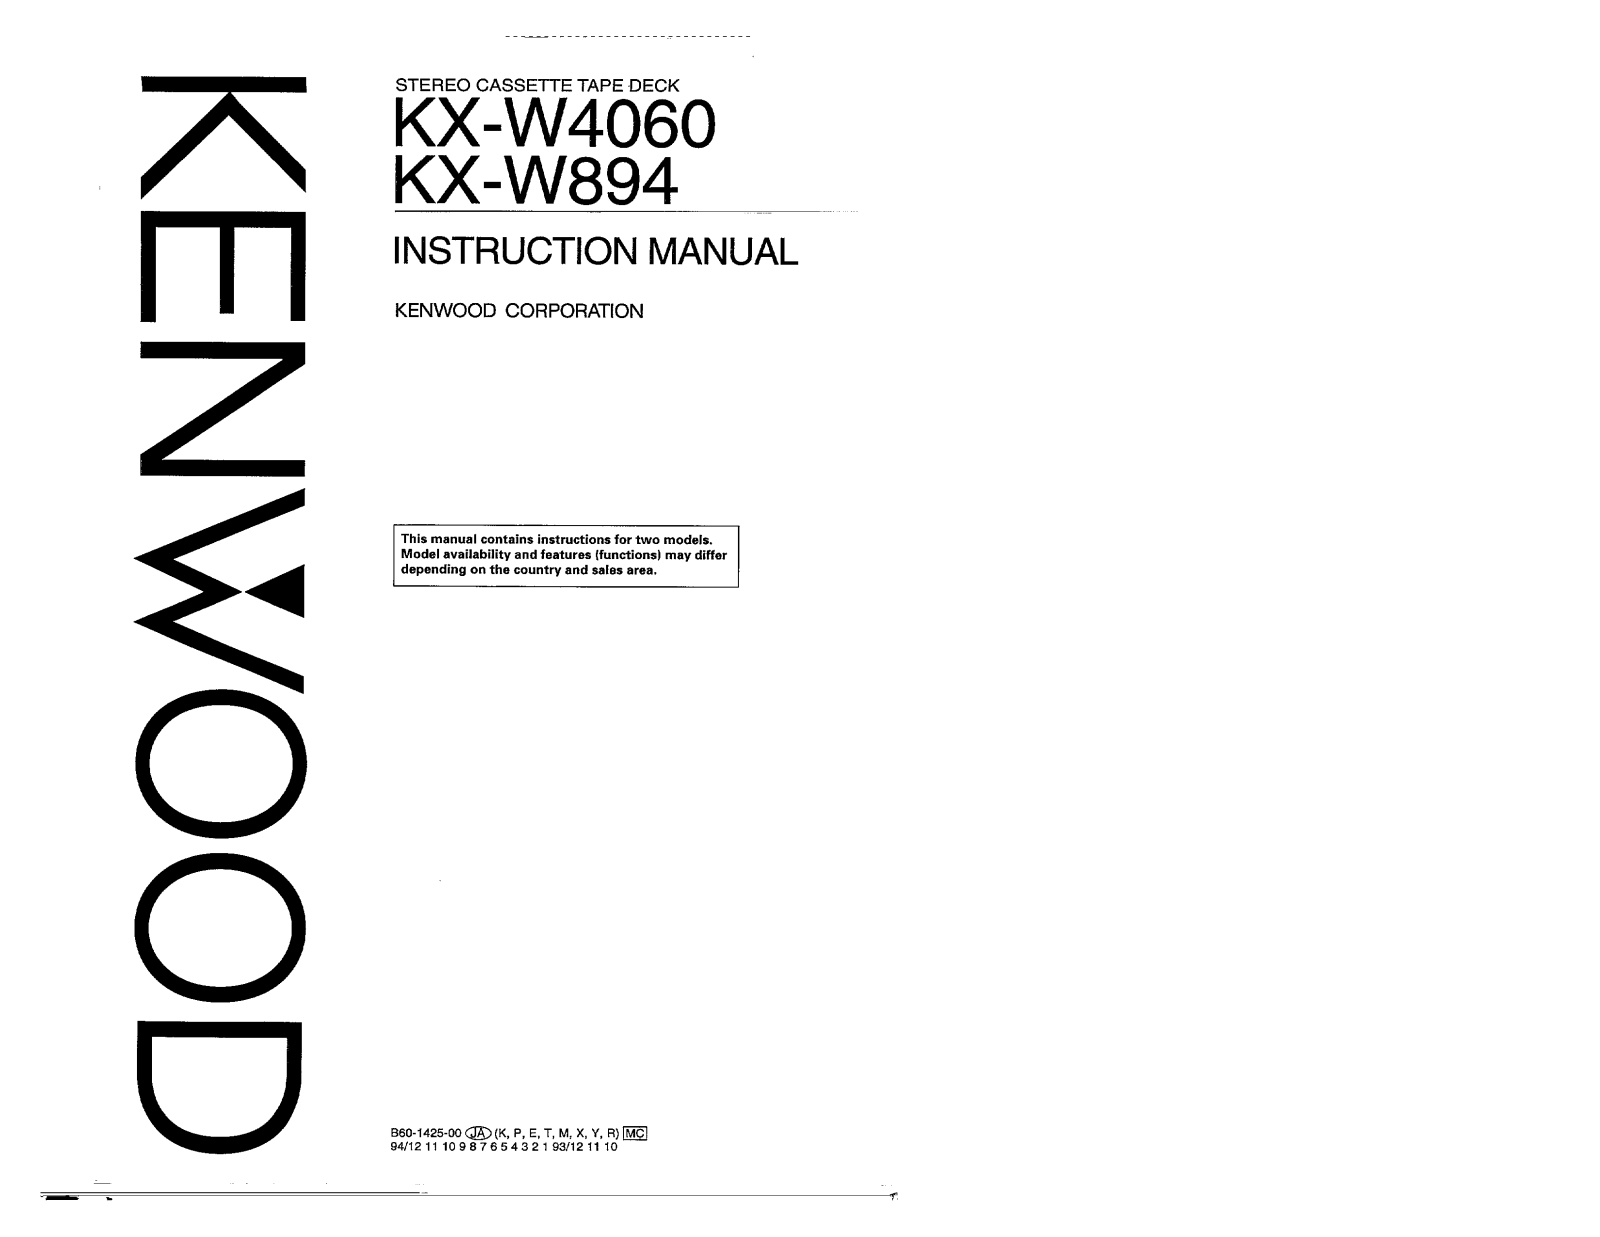 Kenwood KX-W894, KX-W4060 Owner's Manual